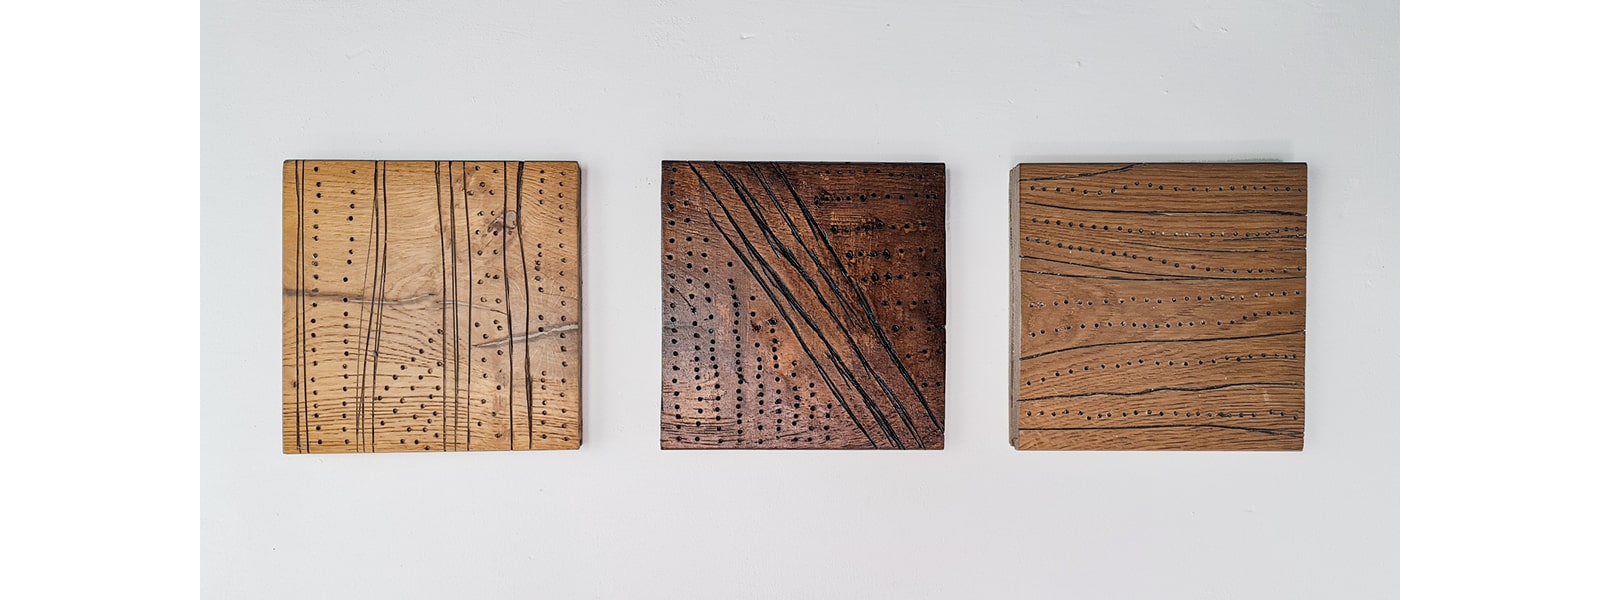 three wood carvings hung up